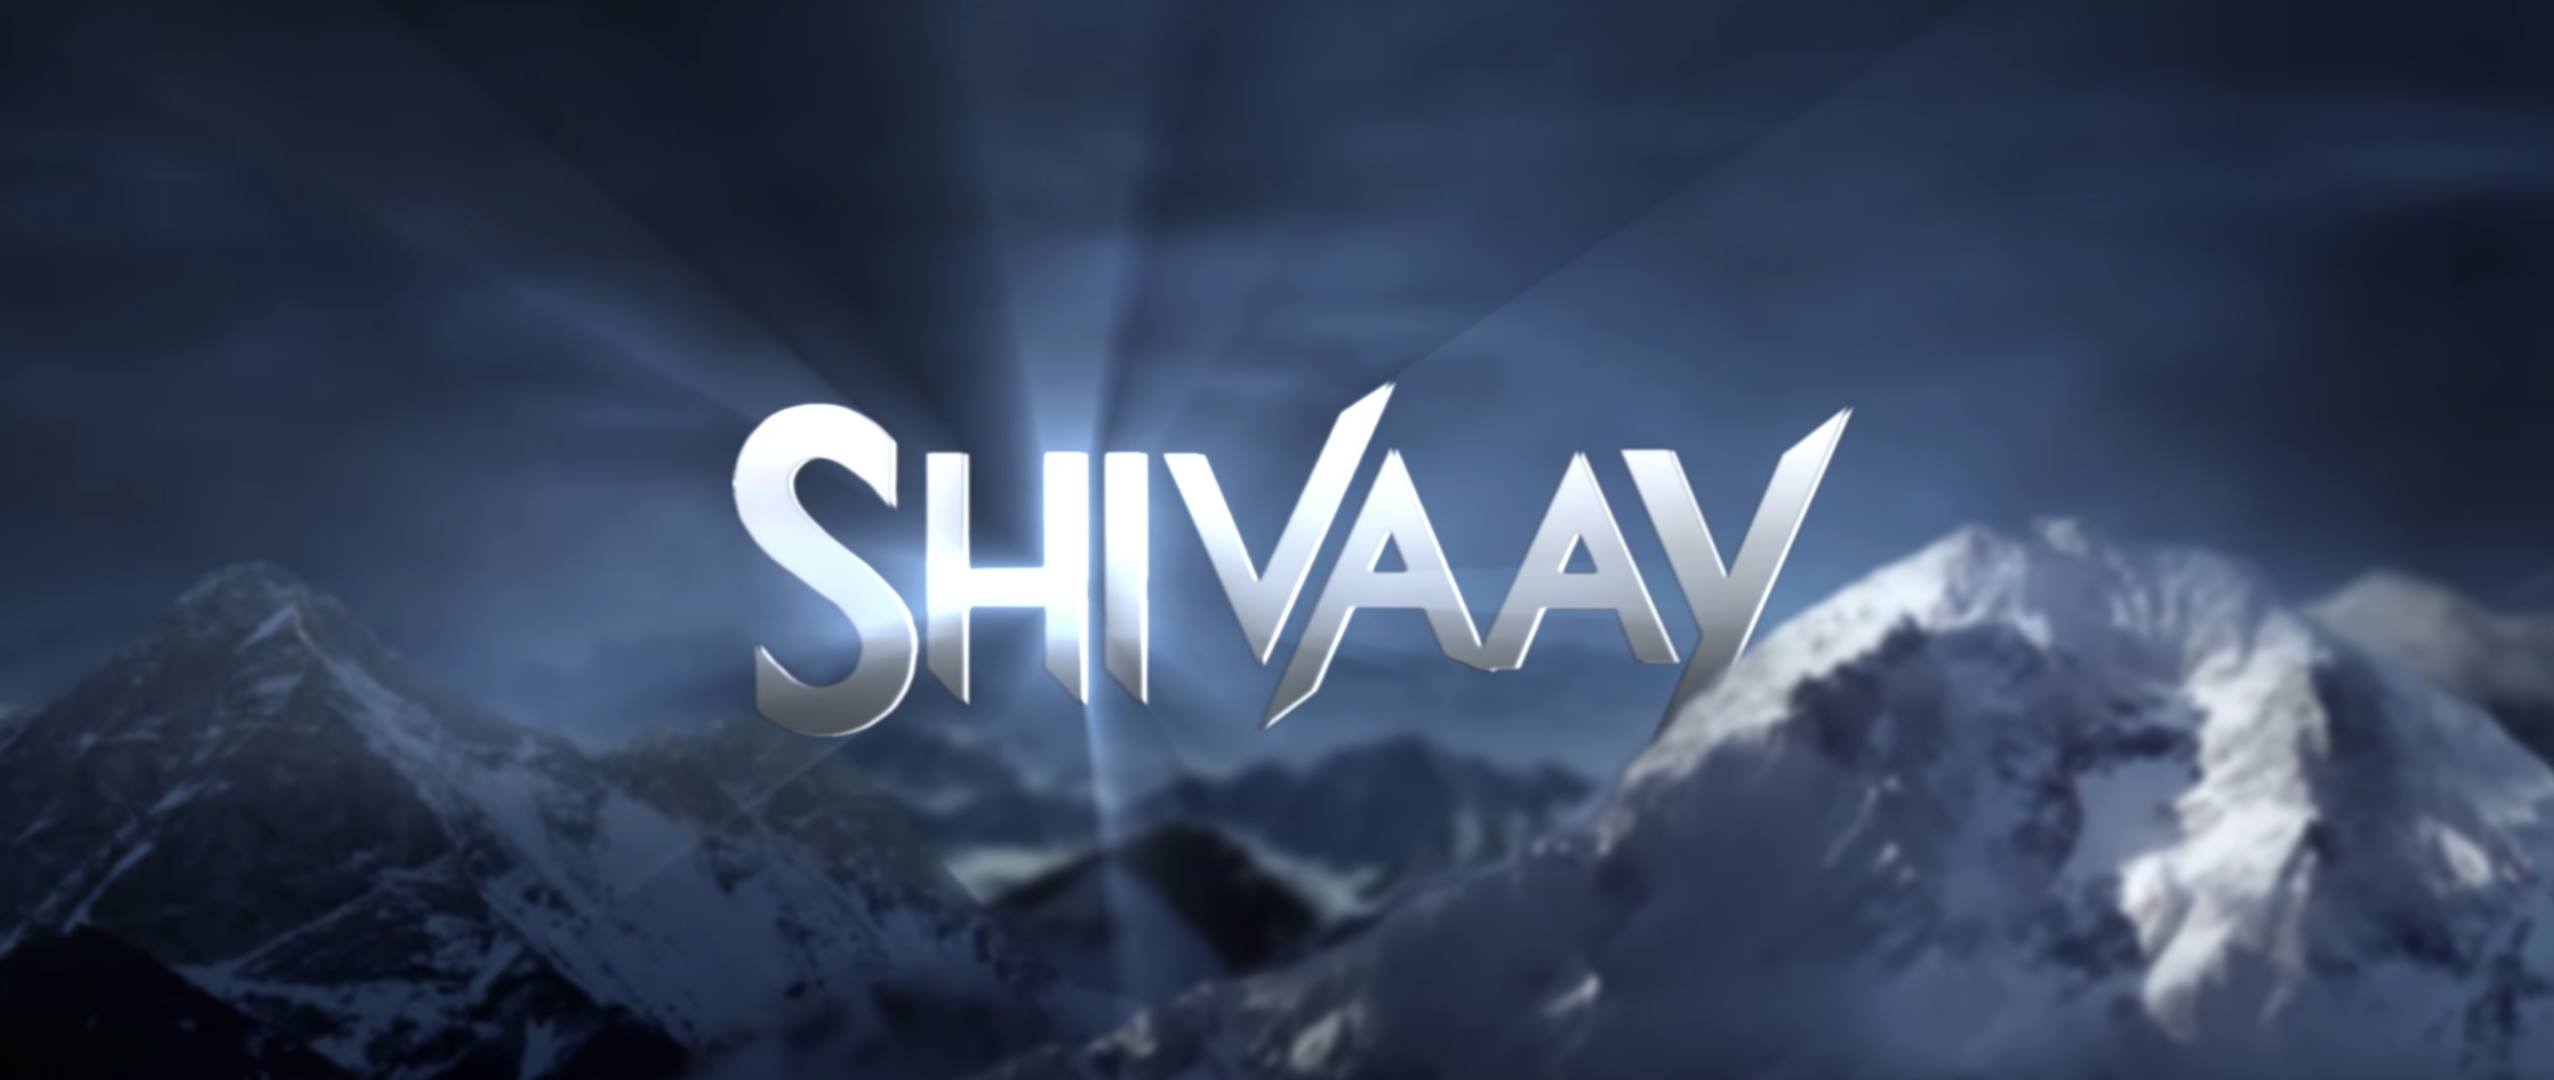 Ajay Devgn's Shivaay